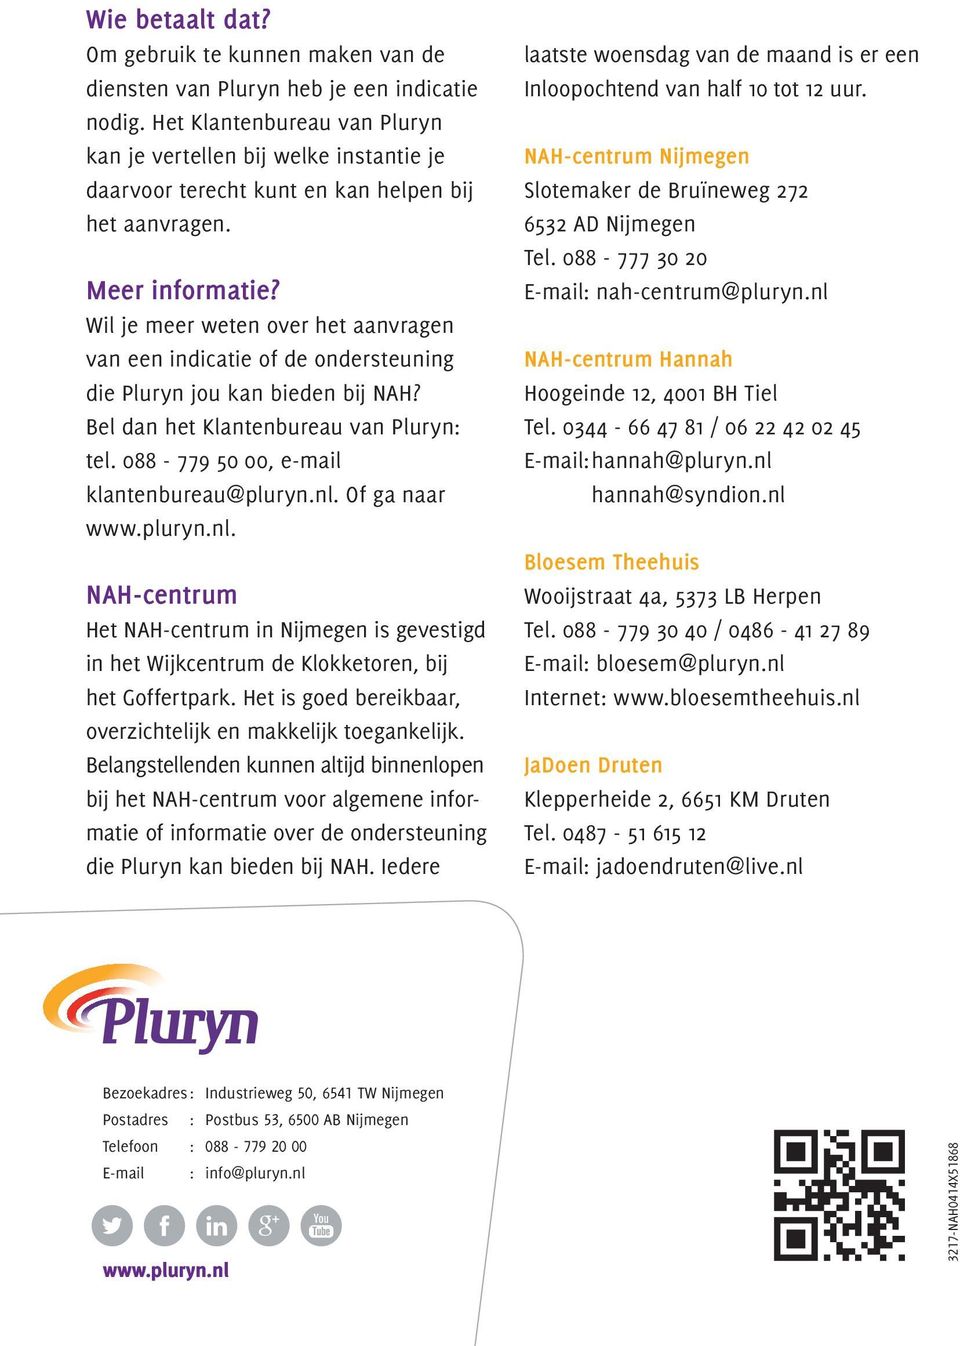 Wil je meer weten over het aanvragen van een indicatie of de ondersteuning die Pluryn jou kan bieden bij NAH? Bel dan het Klantenbureau van Pluryn: tel. 088-779 50 00, e-mail klantenbureau@pluryn.nl.